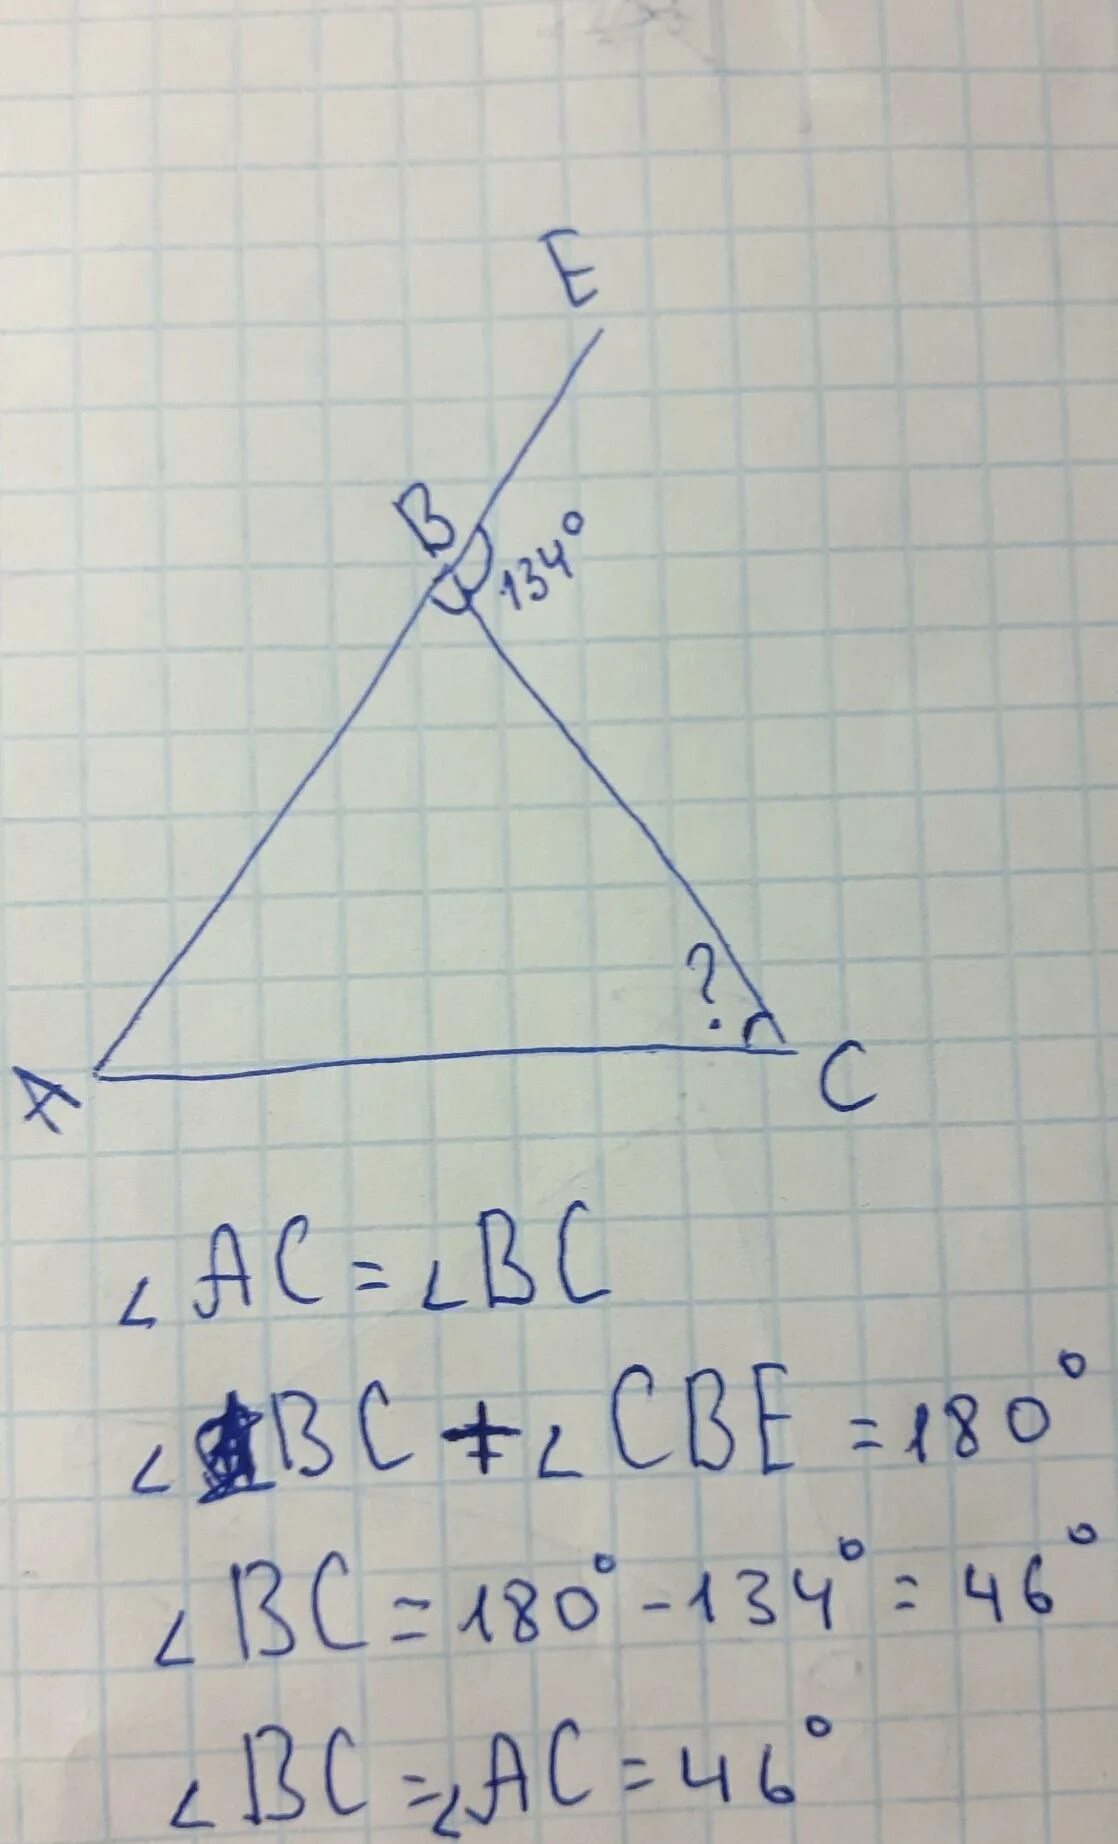 В треугольнике авс внешний угол при вершине. Внешний угол при вершине b. Внешний угол при вершине b треугольника ABC. Внешний угол при вершине c. Внешний угол при треугольнике ABC.